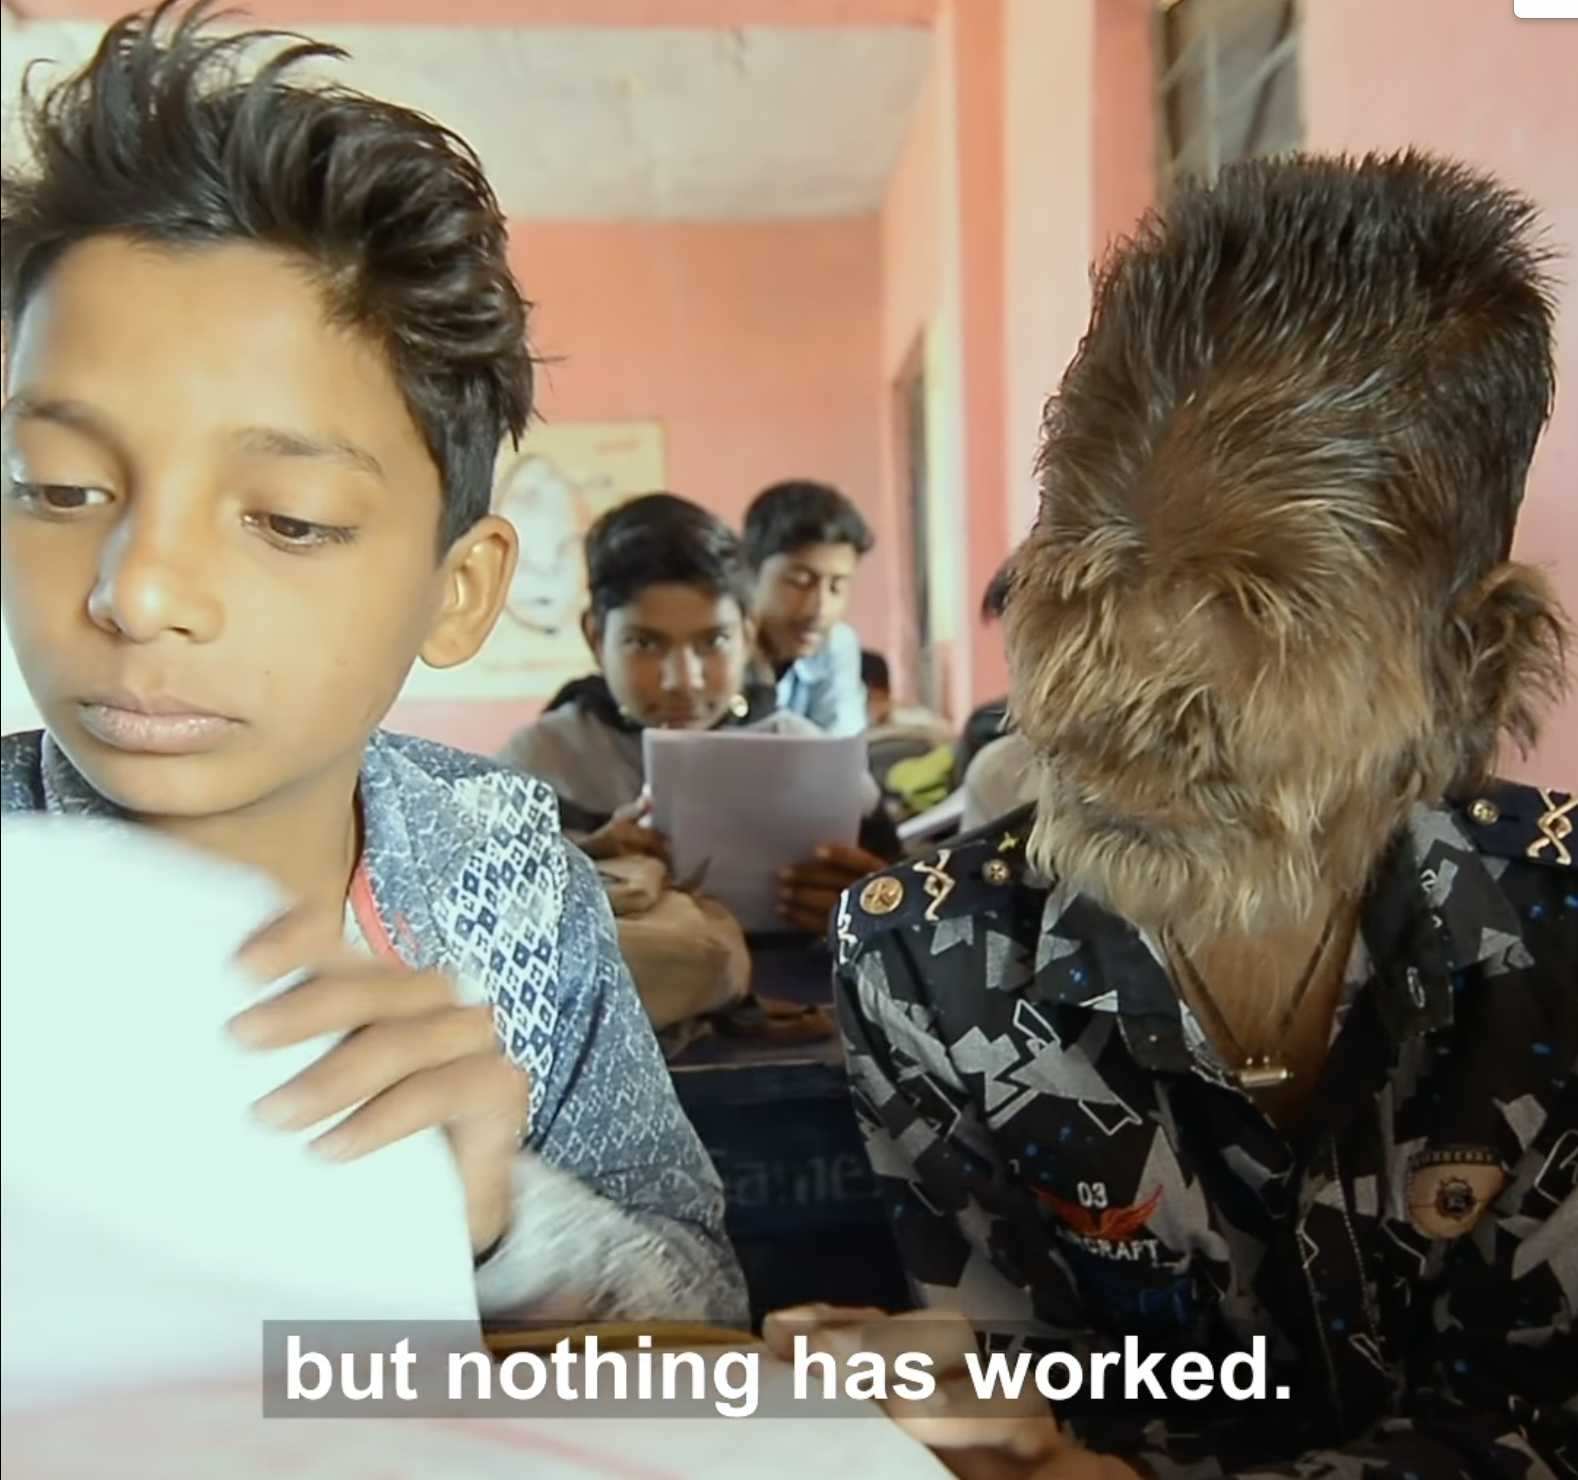 Dilip Rathore und sein Freund Lalit Patidar in der Schule, wie in einem "Born Different"-Facebook-Video am 9. Mai 2020 zu sehen ist | Quelle: Facebook/Born Different